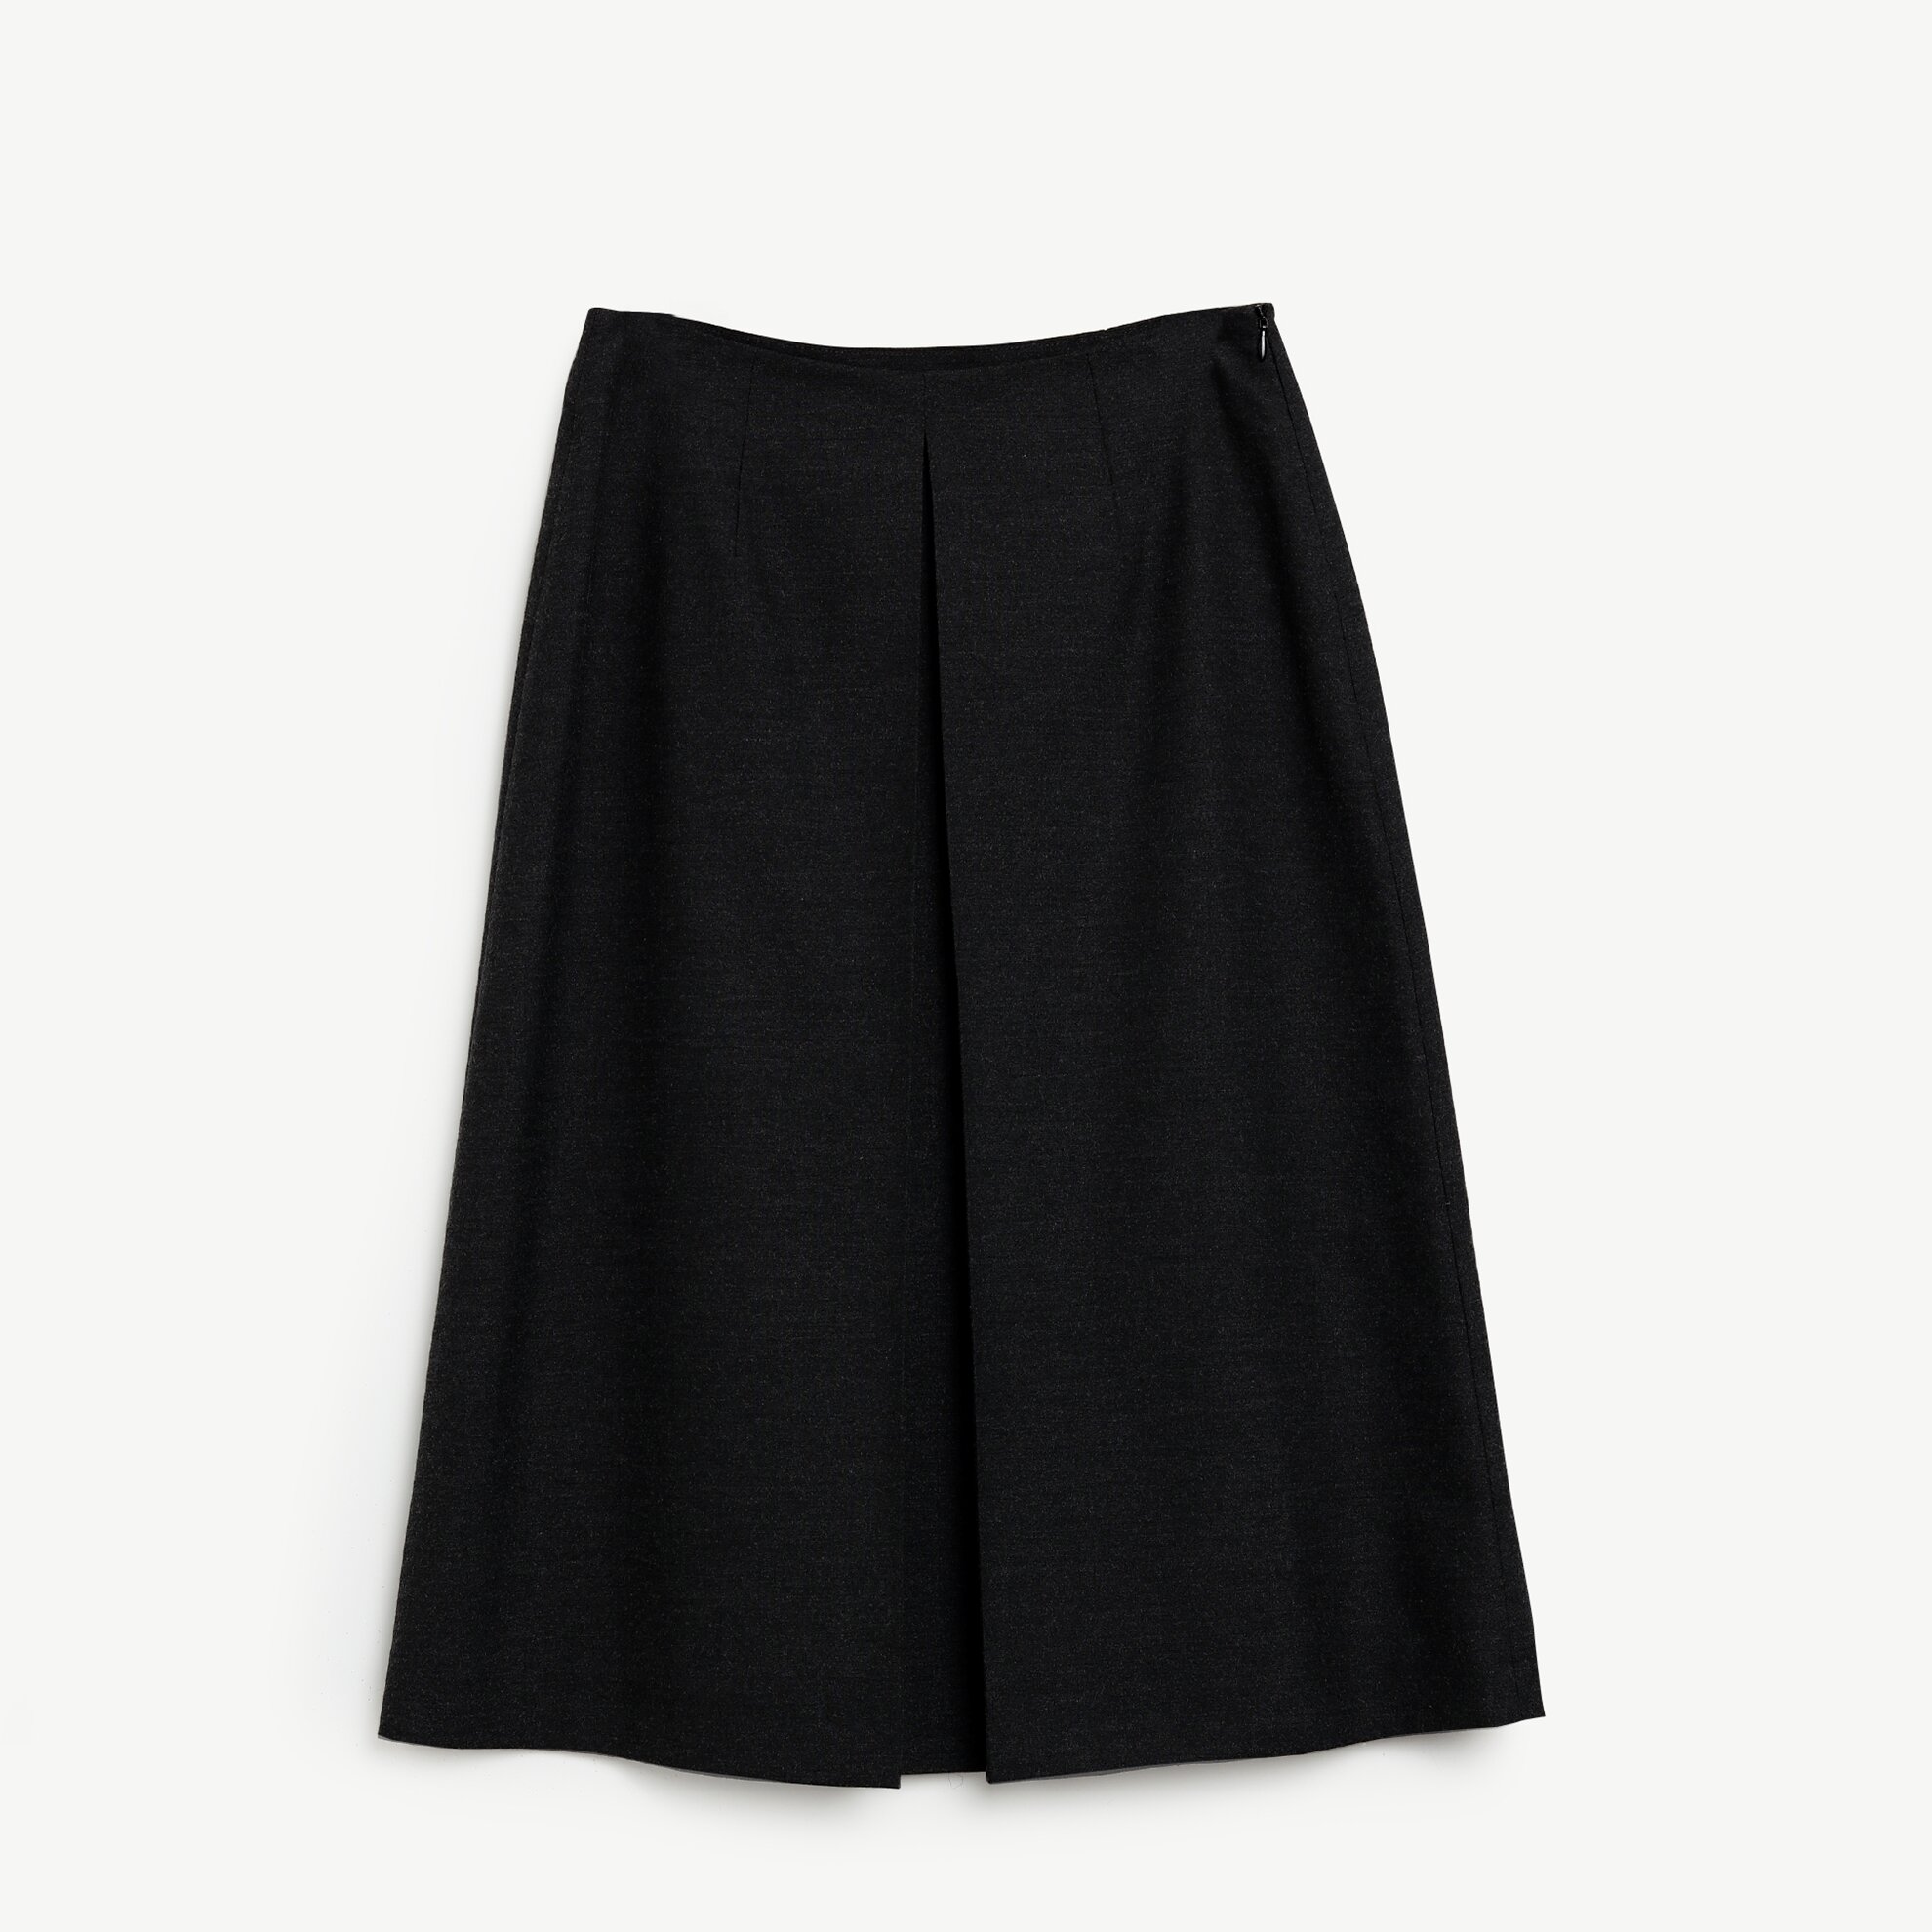 Pleat Detailed Skirt